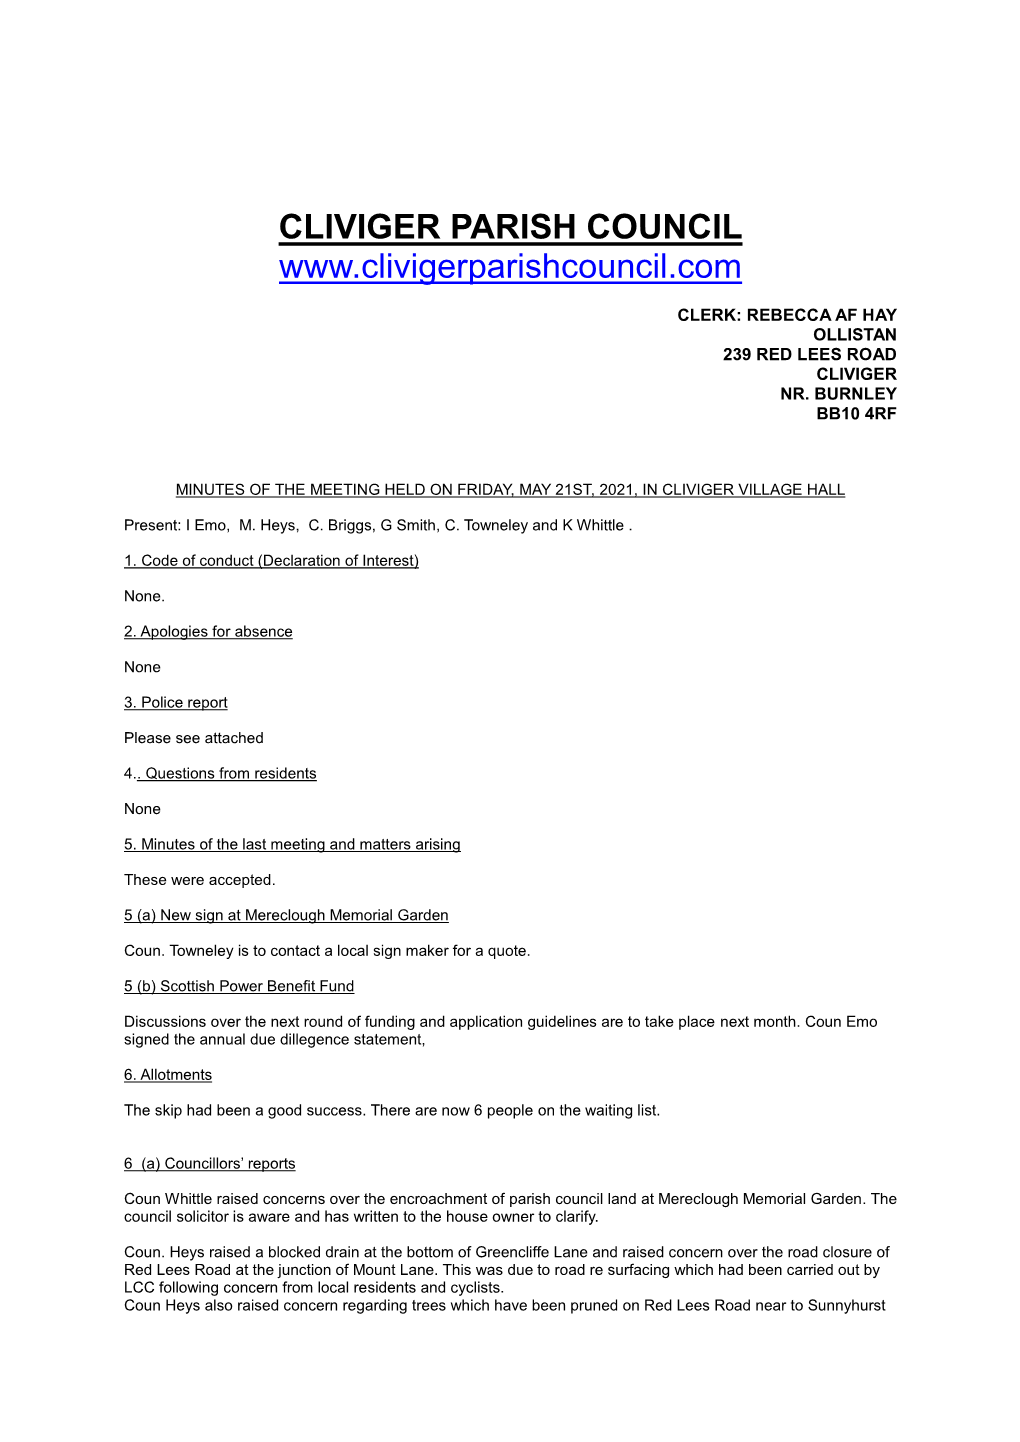 Cliviger Parish Council